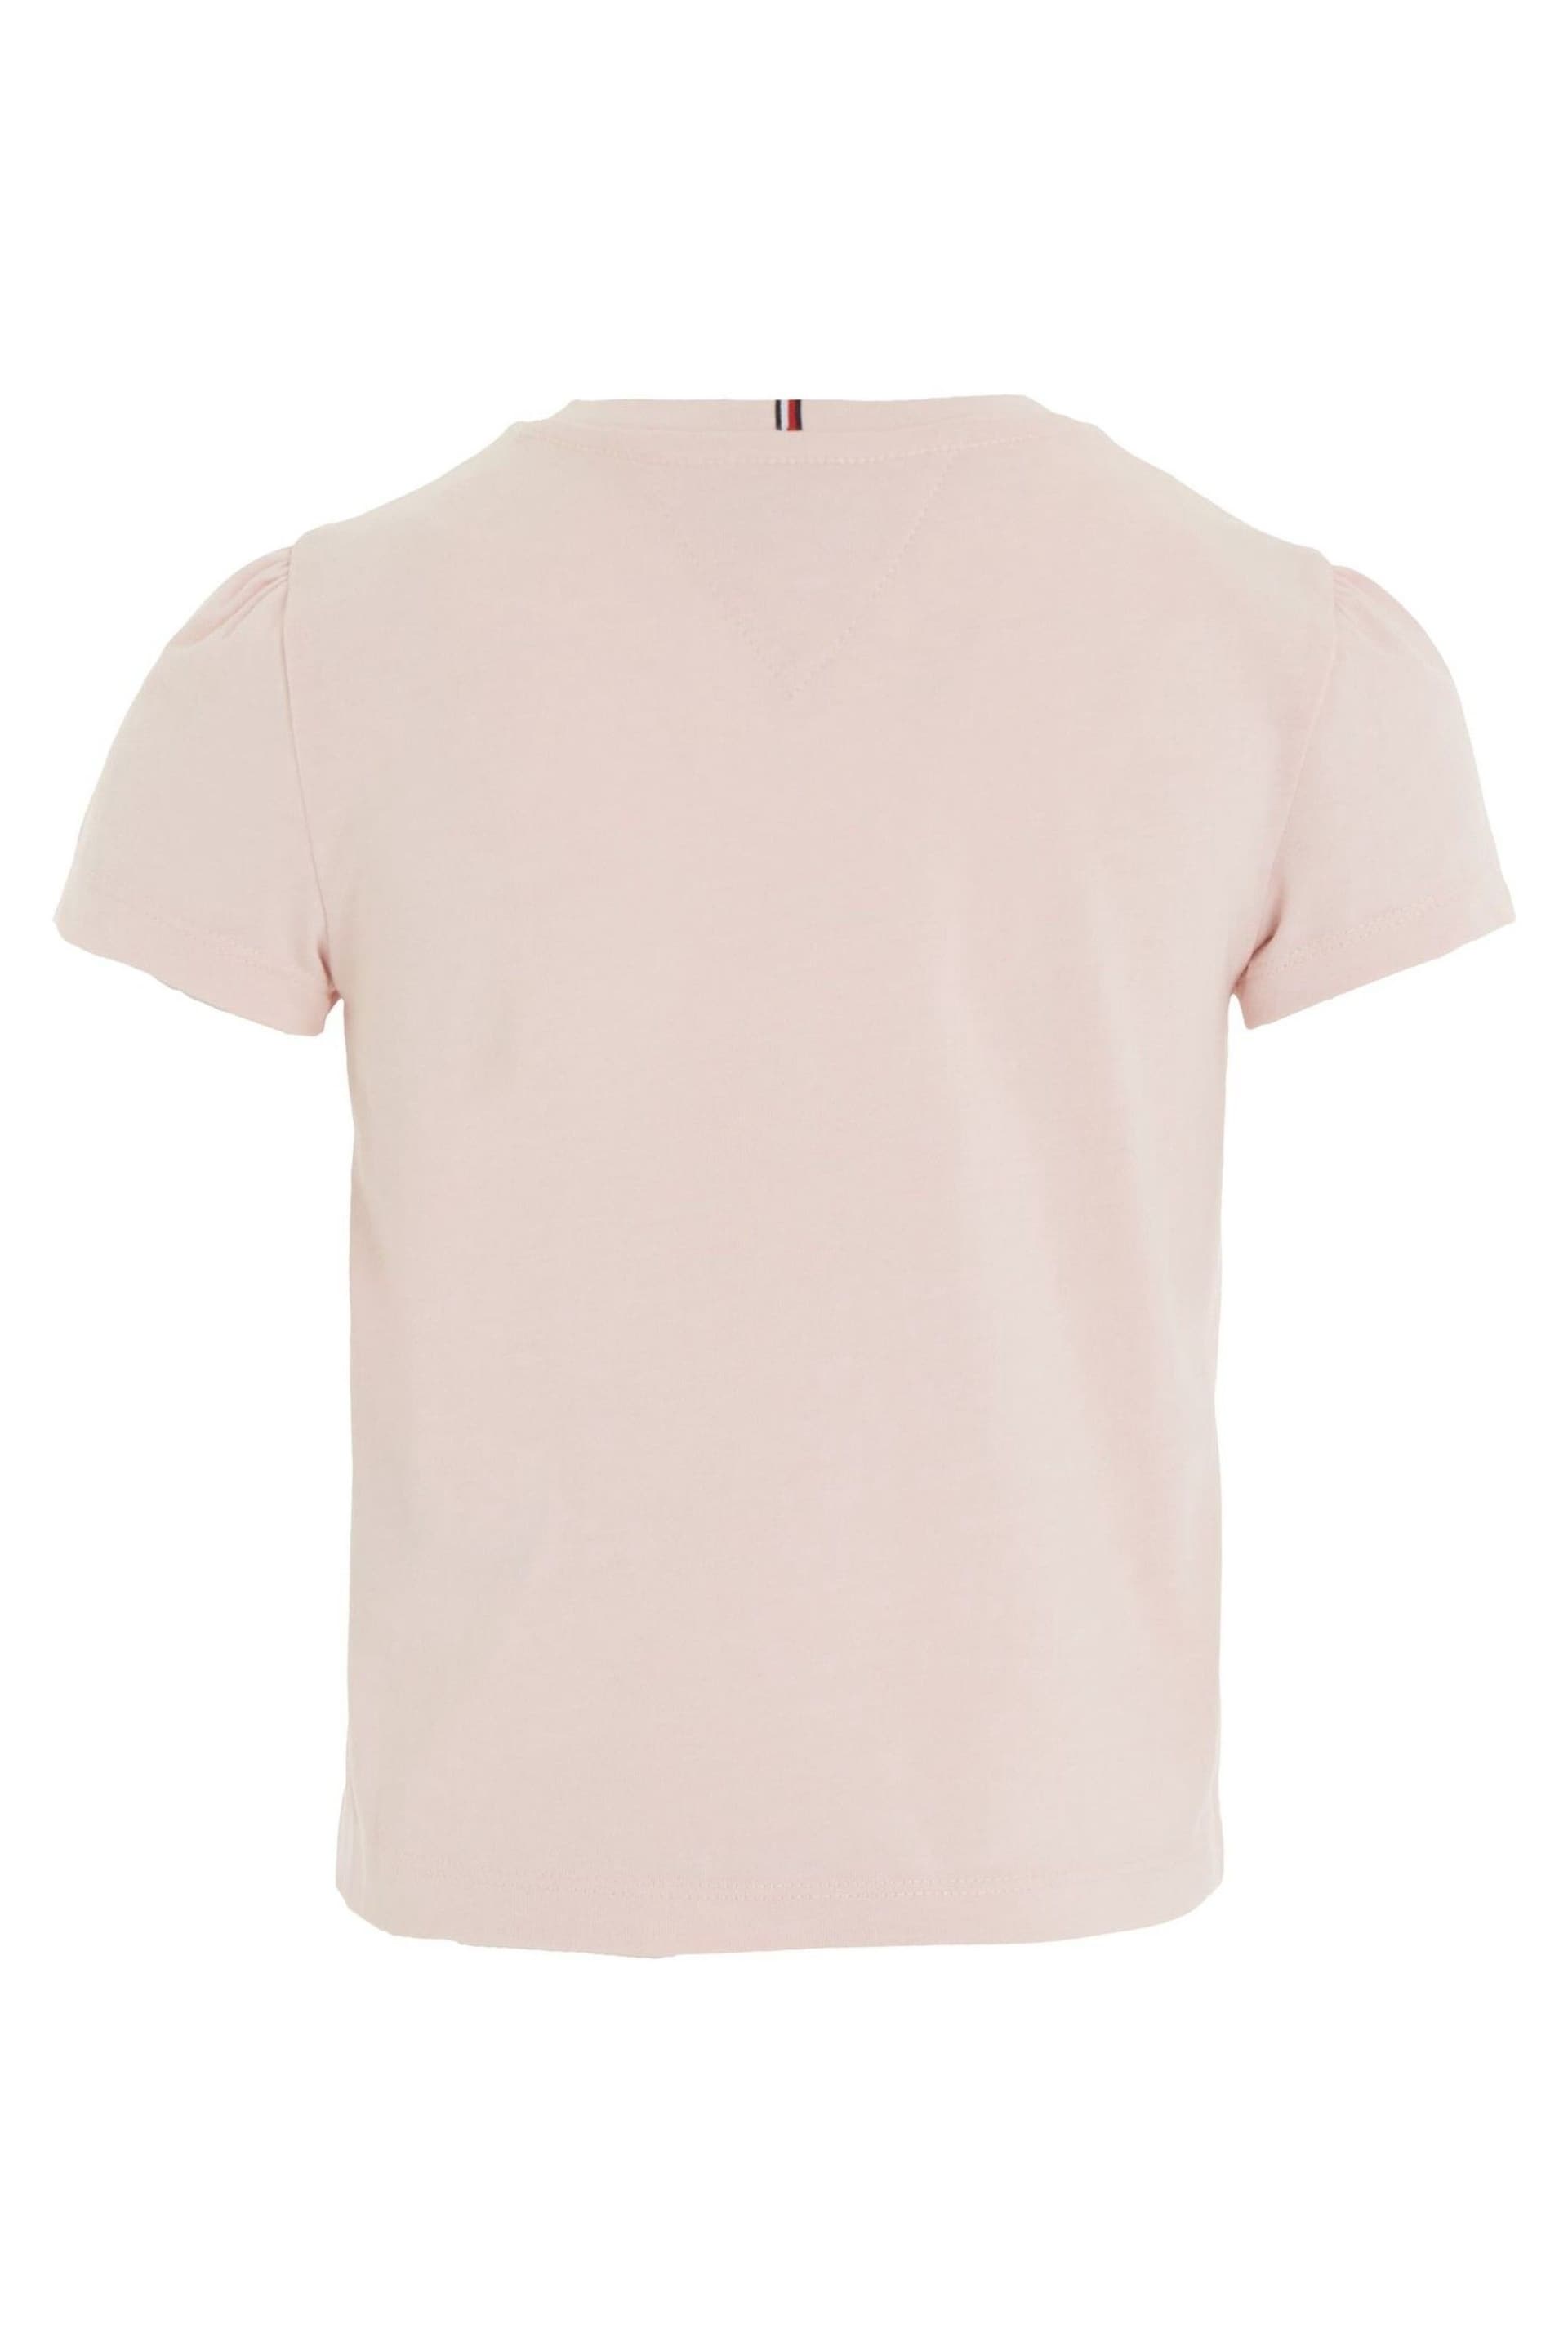 Tommy Hilfiger Pink Hilfiger Script T-Shirt - Image 2 of 3